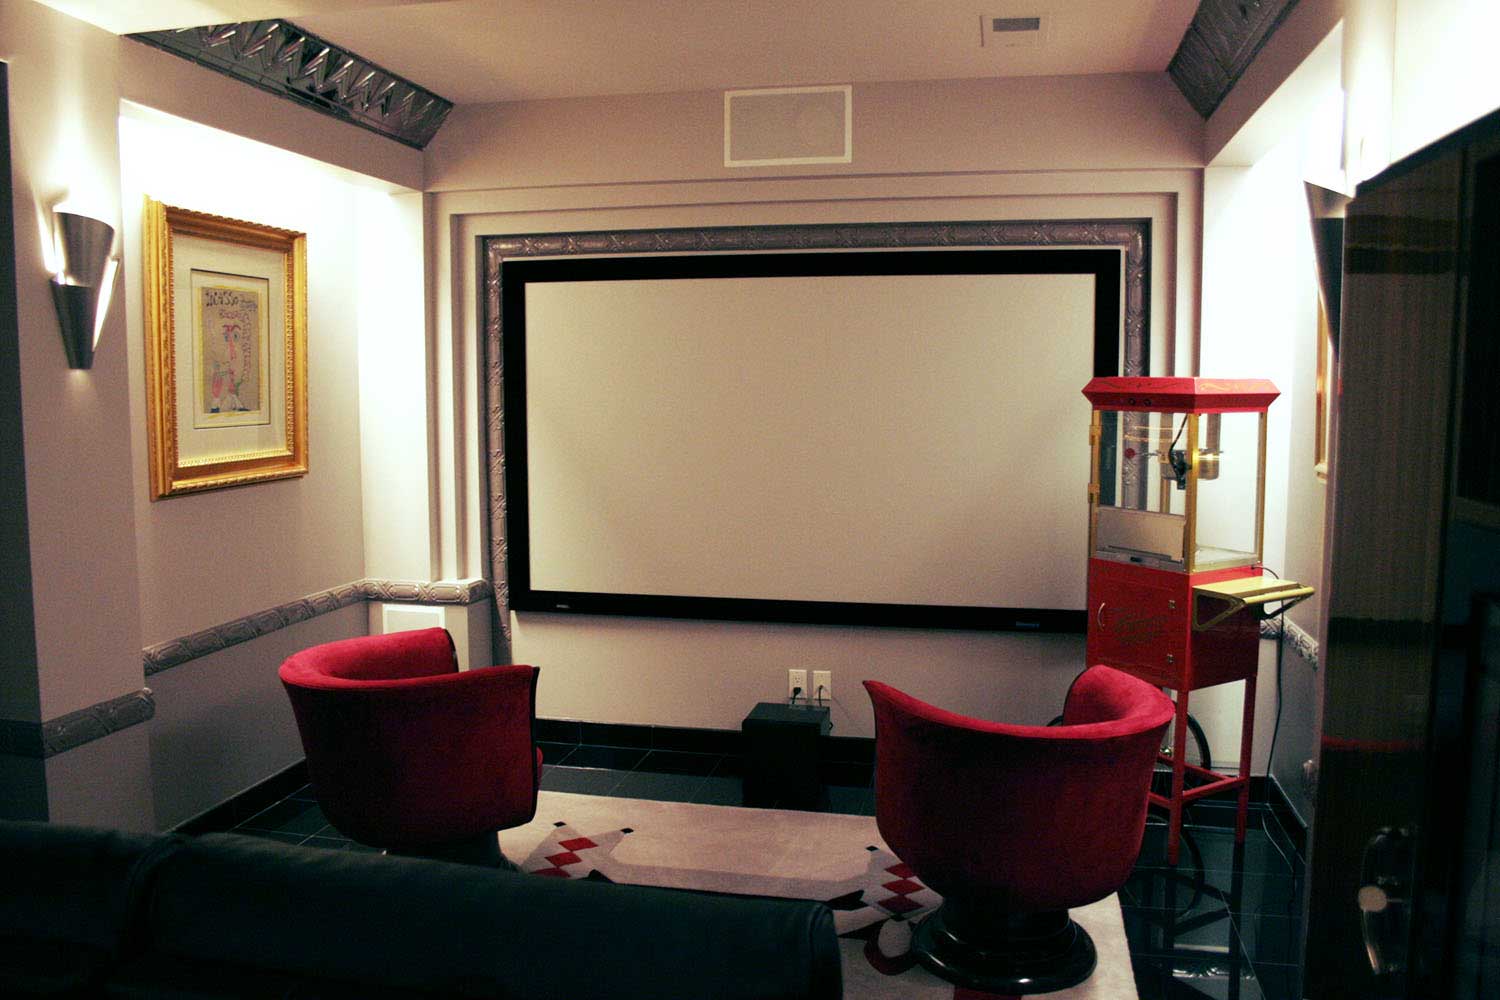 Private Movie Theatre Remodel and Design